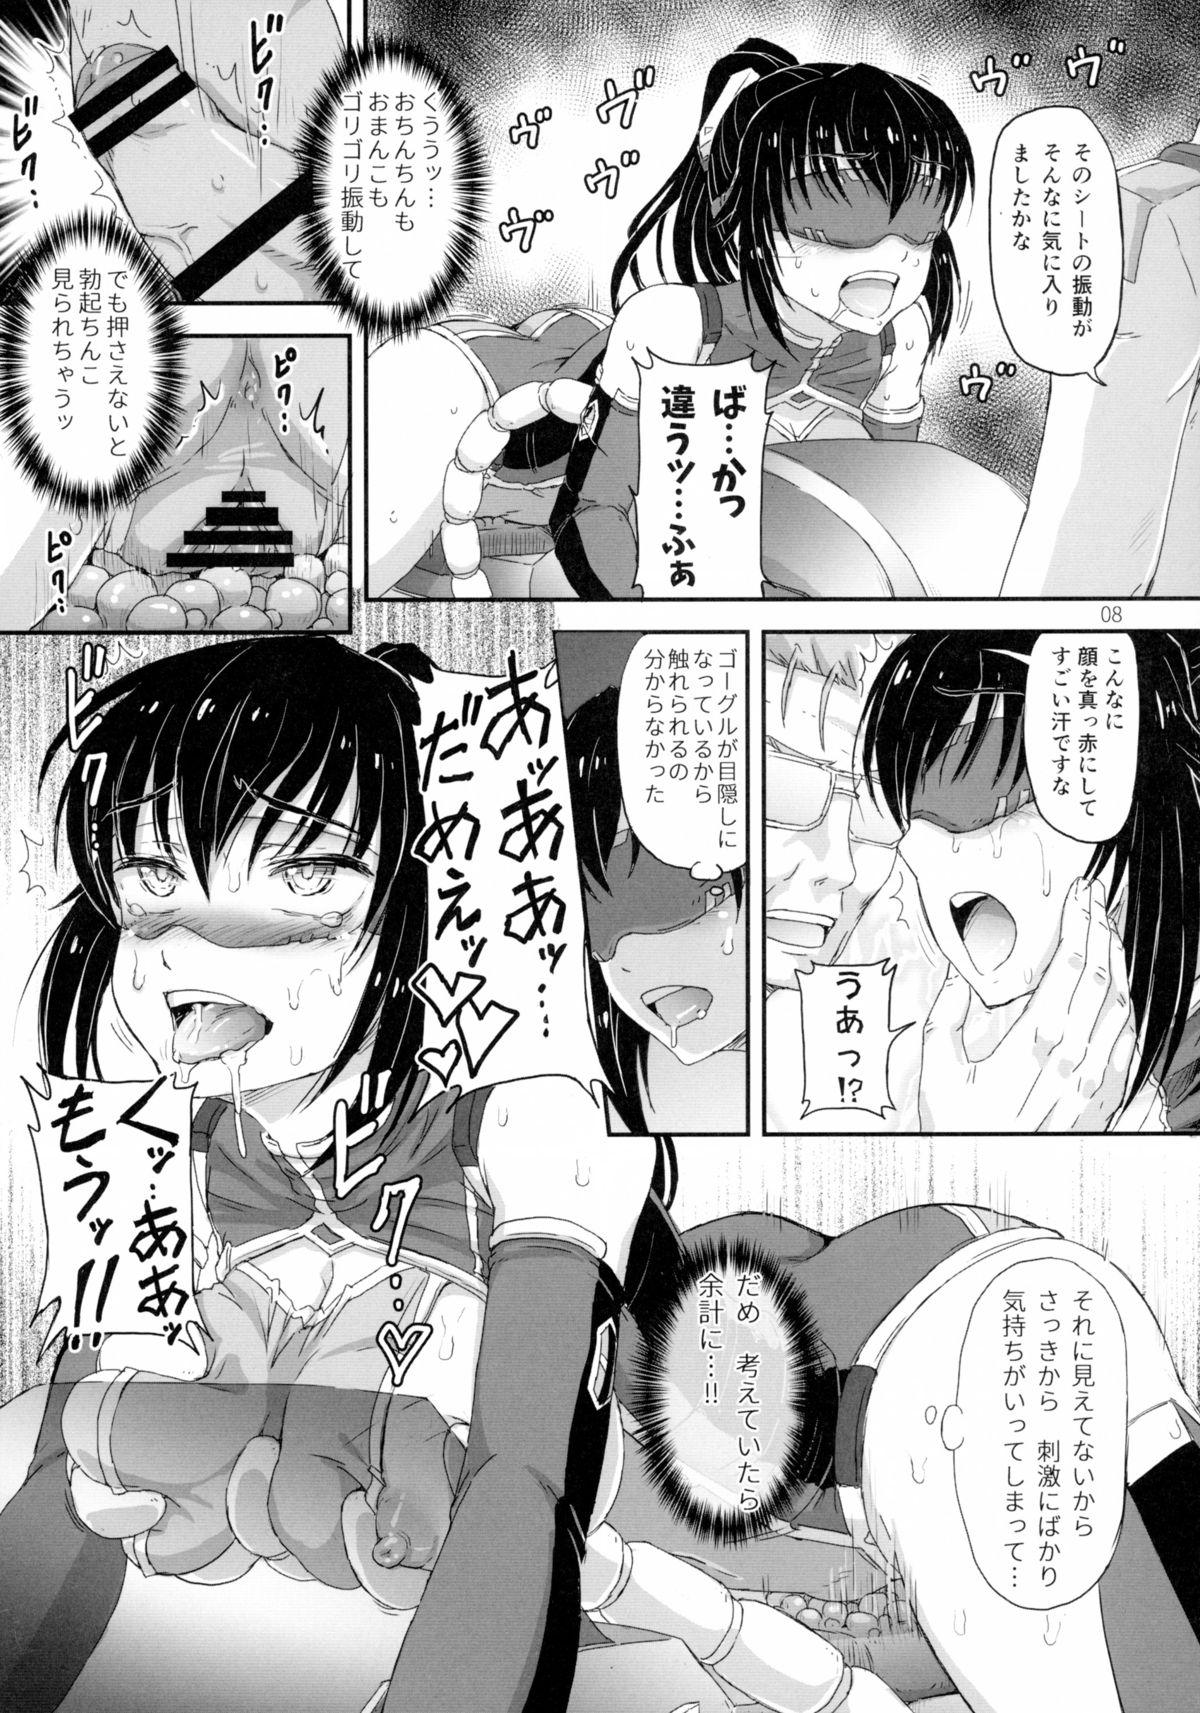 Three Some Juni ga Futanari datte Uwasa wa.....Hontou dattan desu ne!! Fantasy - Page 8